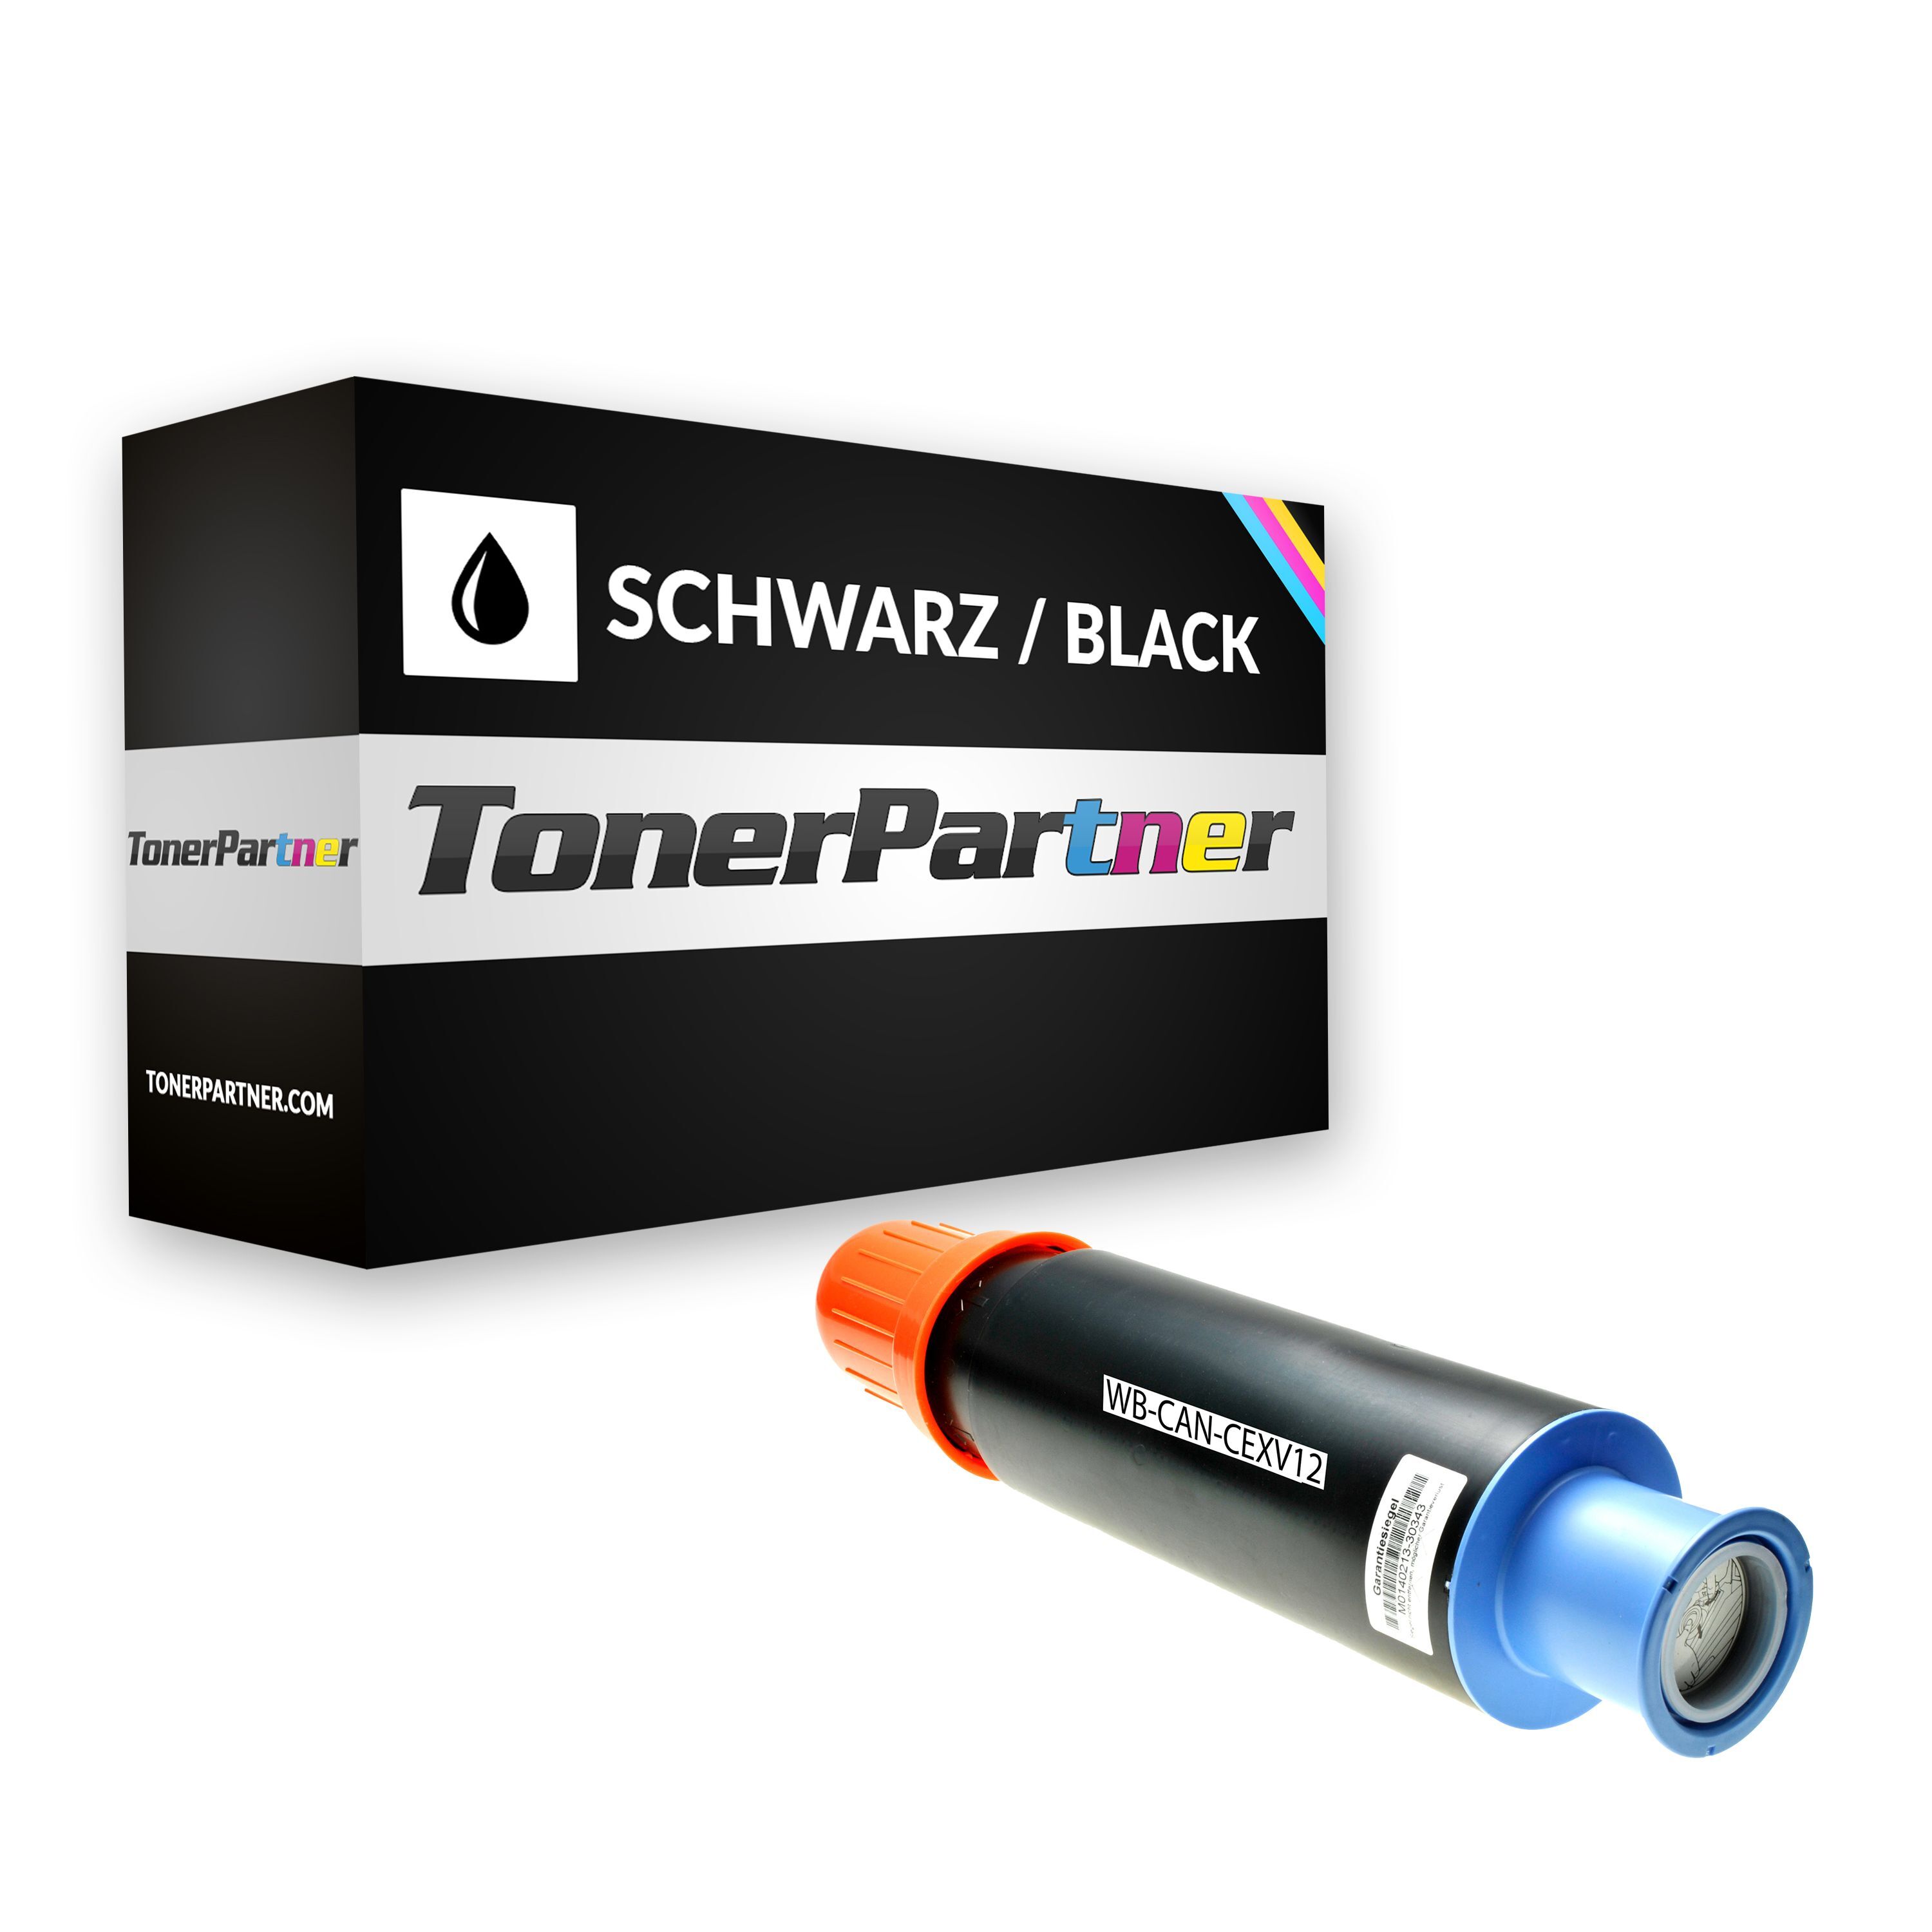 TonerPartner Kompatibel zu Canon imageRUNNER 3530 Toner (C-EXV 12 / 9634 A 002) schwarz, 24.000 Seiten, 0,16 Rp pro Seite, Inhalt: 1.220 g von TonerPartner